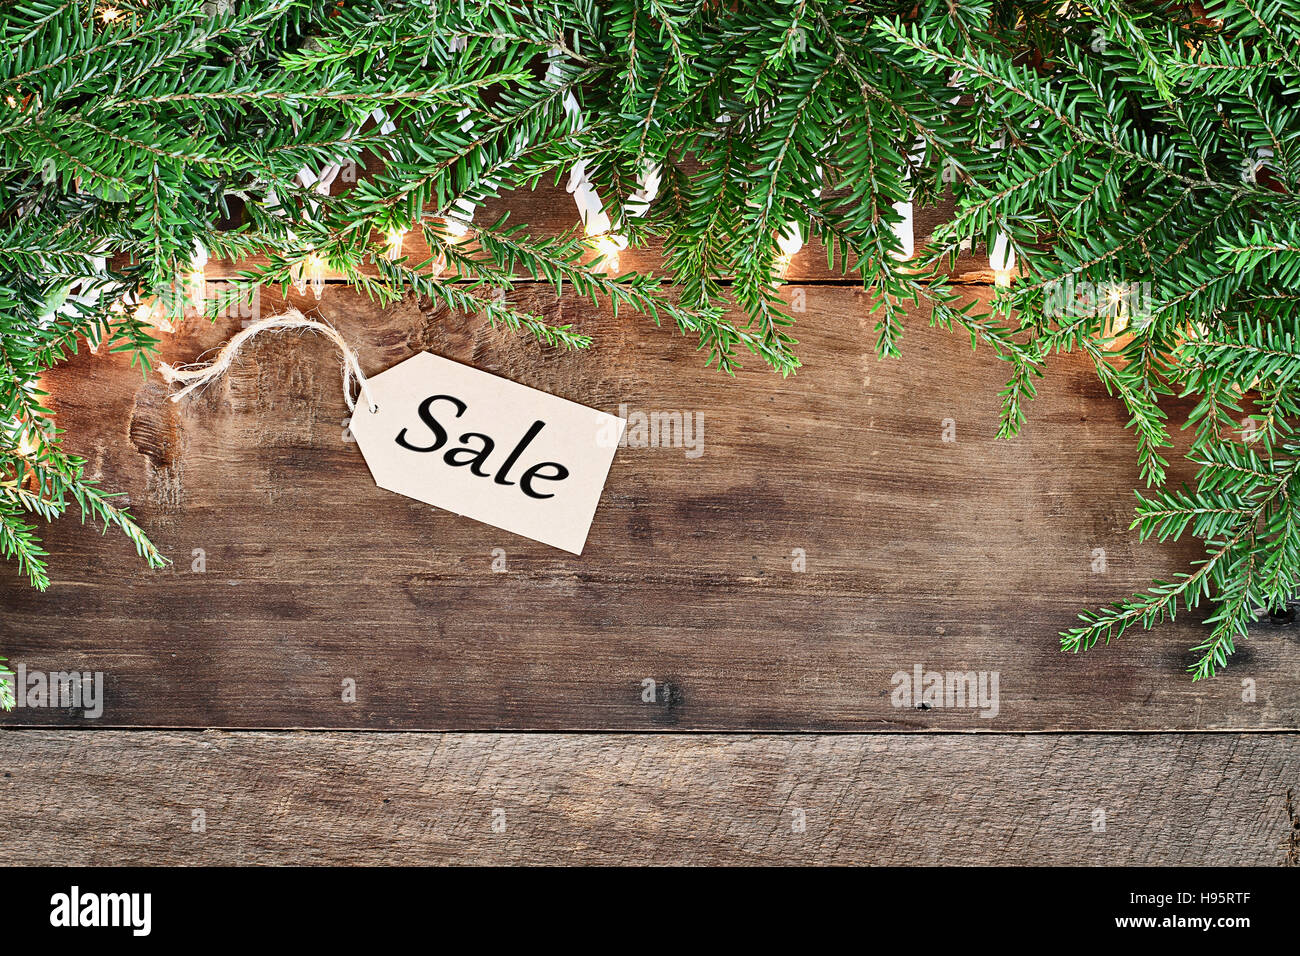 Albero di natale rami di pino, vendite tag e luci decorative su un sfondo rustico di legno del granaio. Immagine ripresa dalla testa. Foto Stock